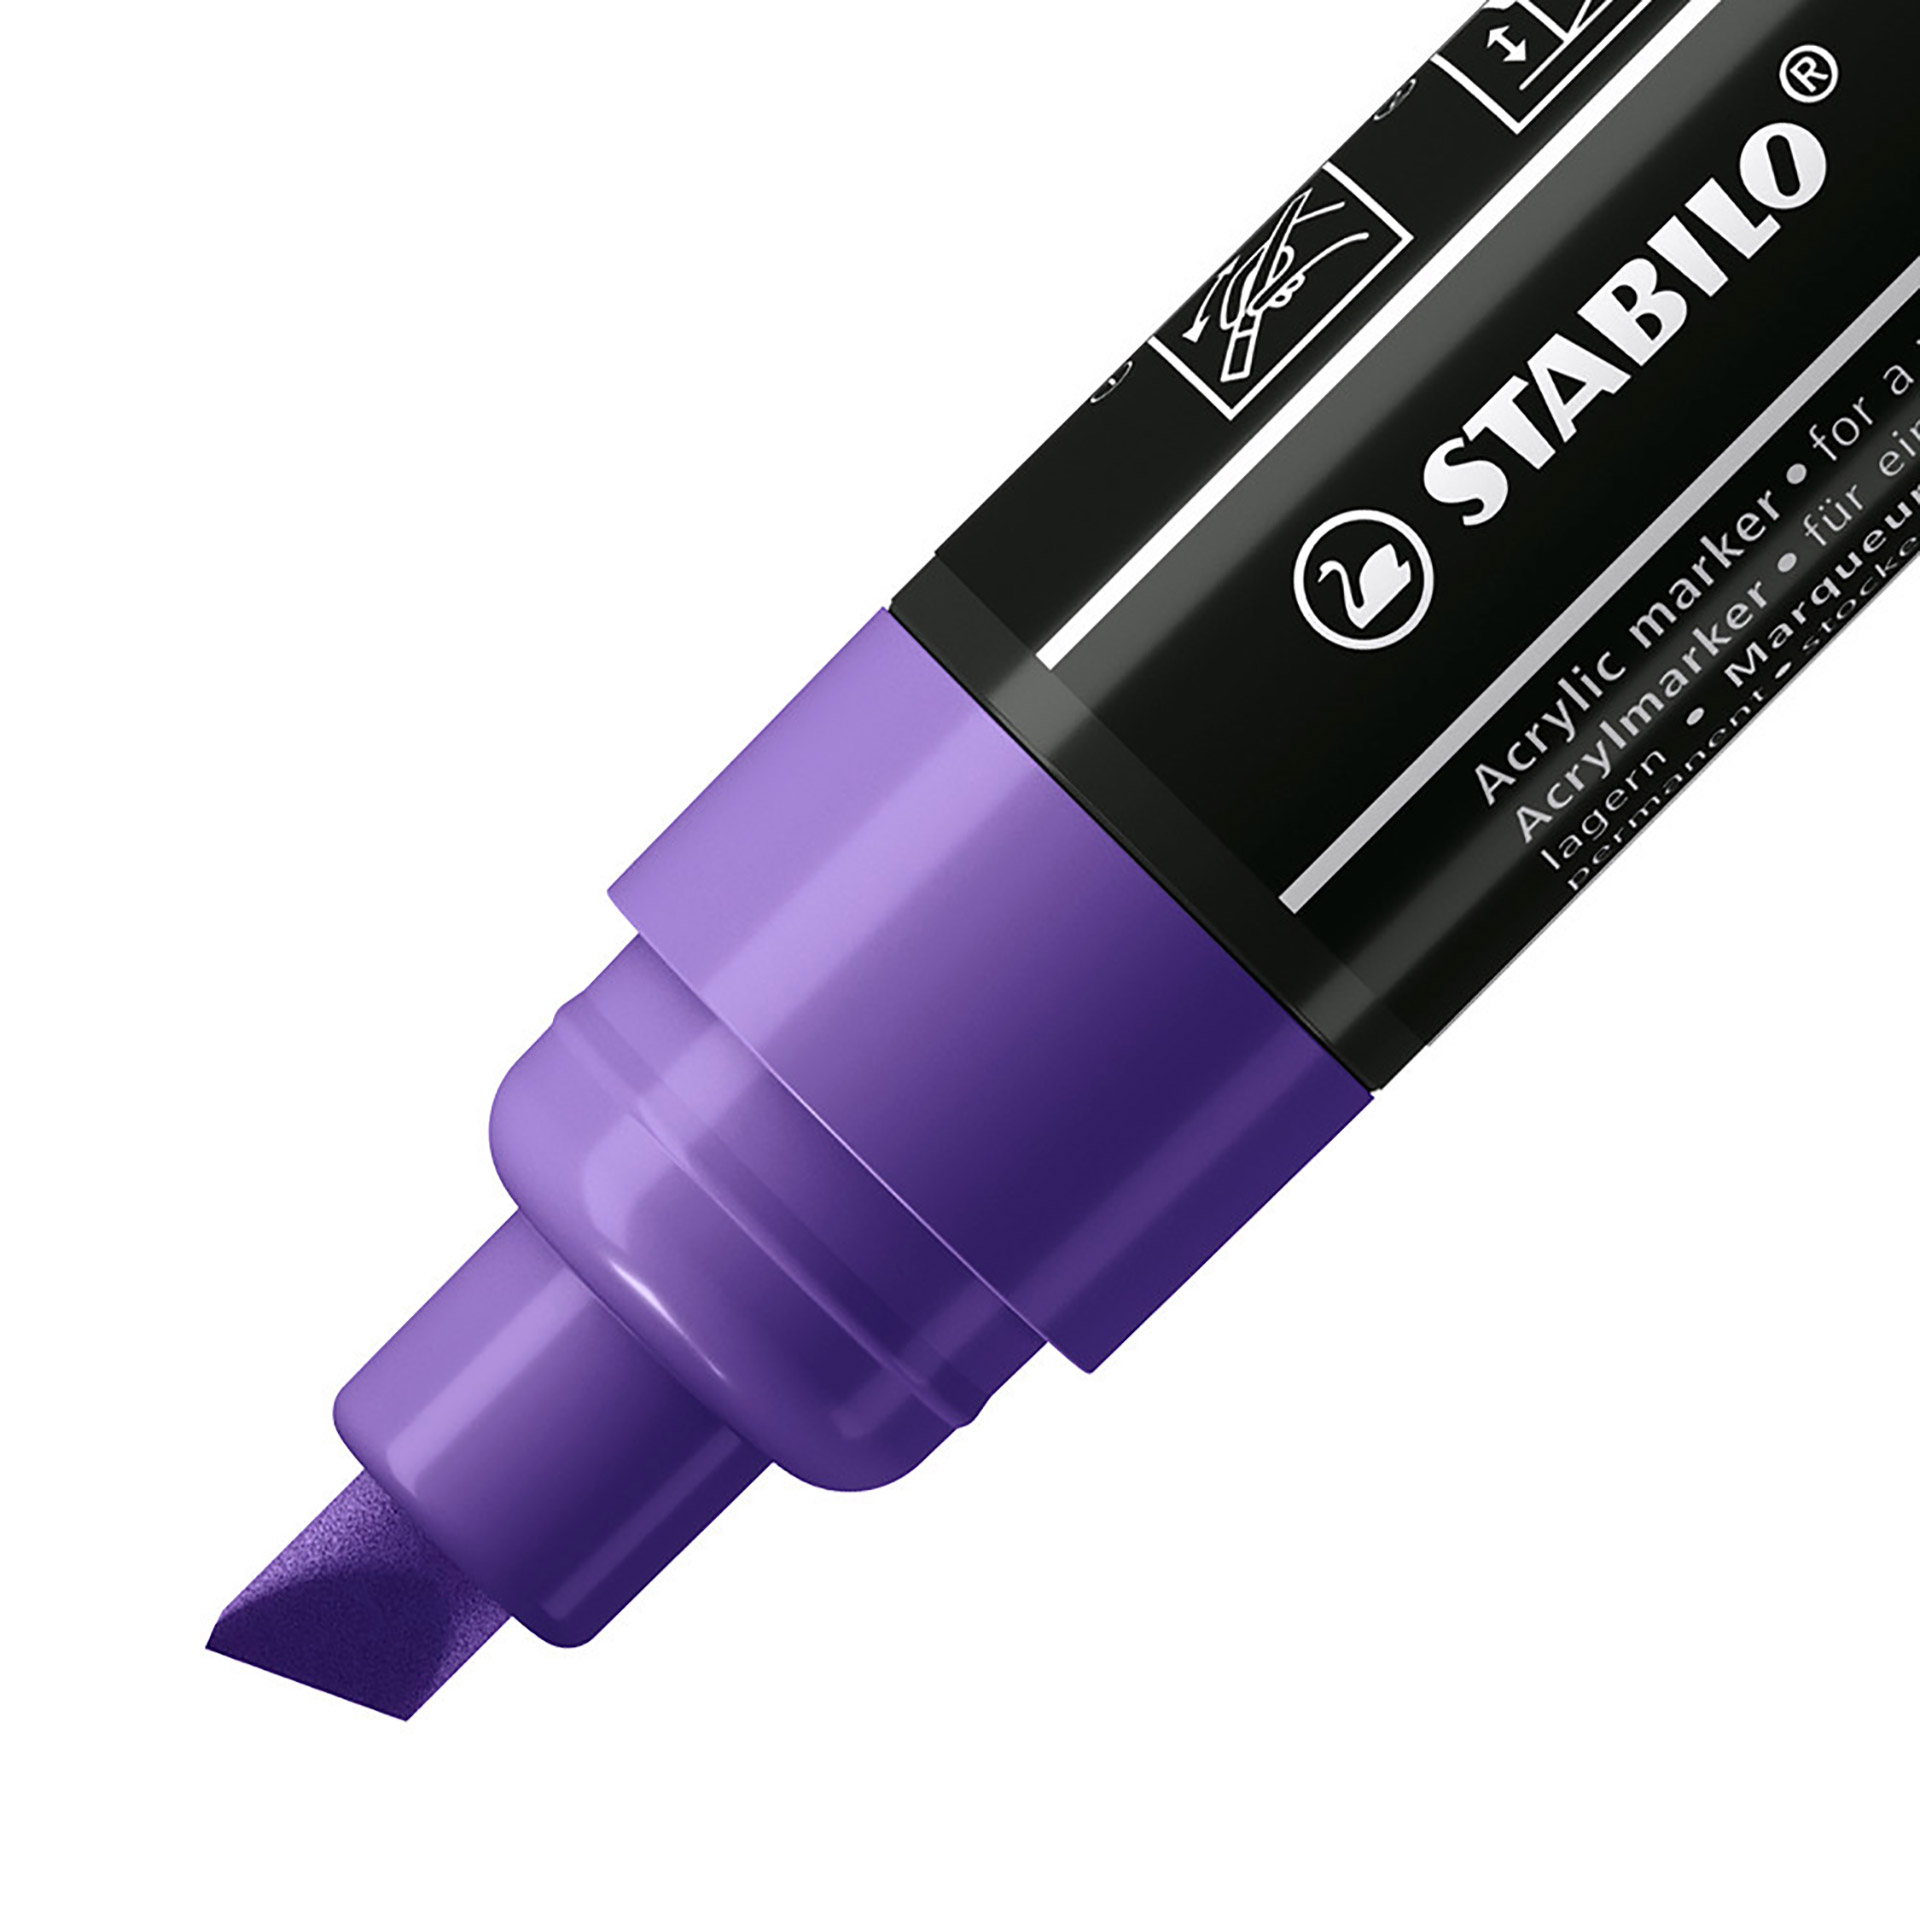 STABILO FREE Acrylic - T800C Punta a scalpello 4-10mm - Confezione da 5 - Viola, , large